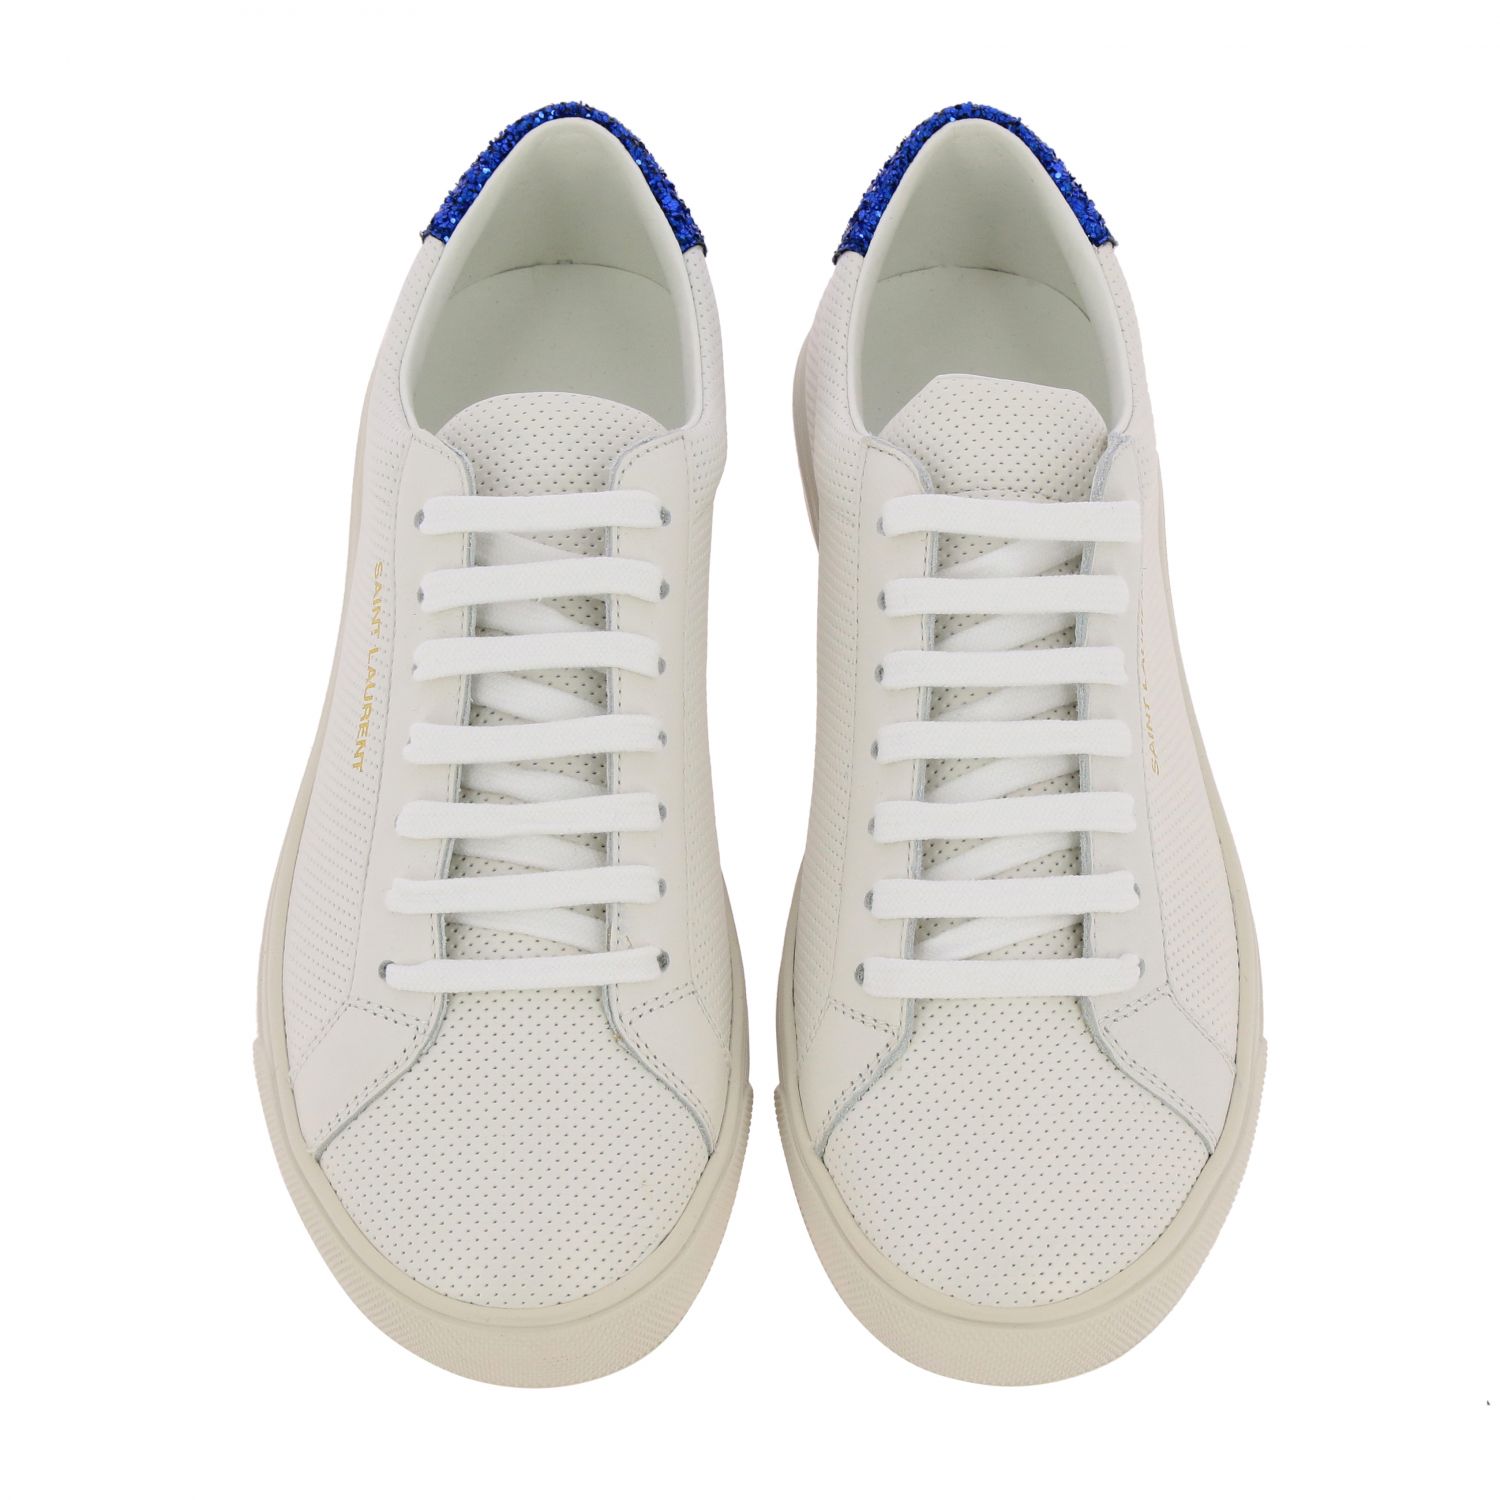 Saint Laurent Outlet: Shoes women - White | Sneakers Saint Laurent ...